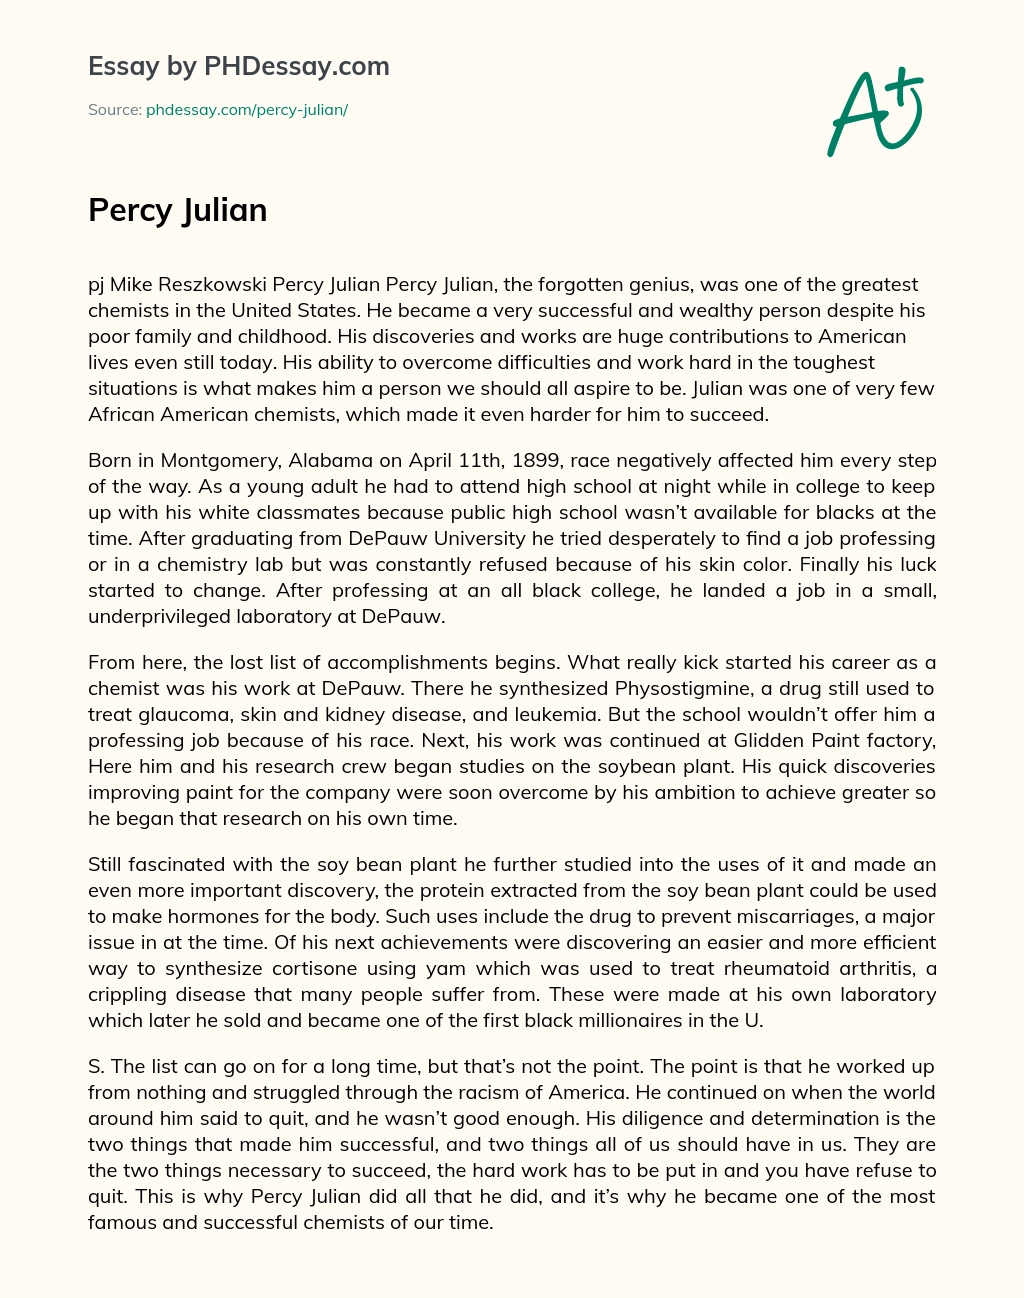 Percy Julian essay